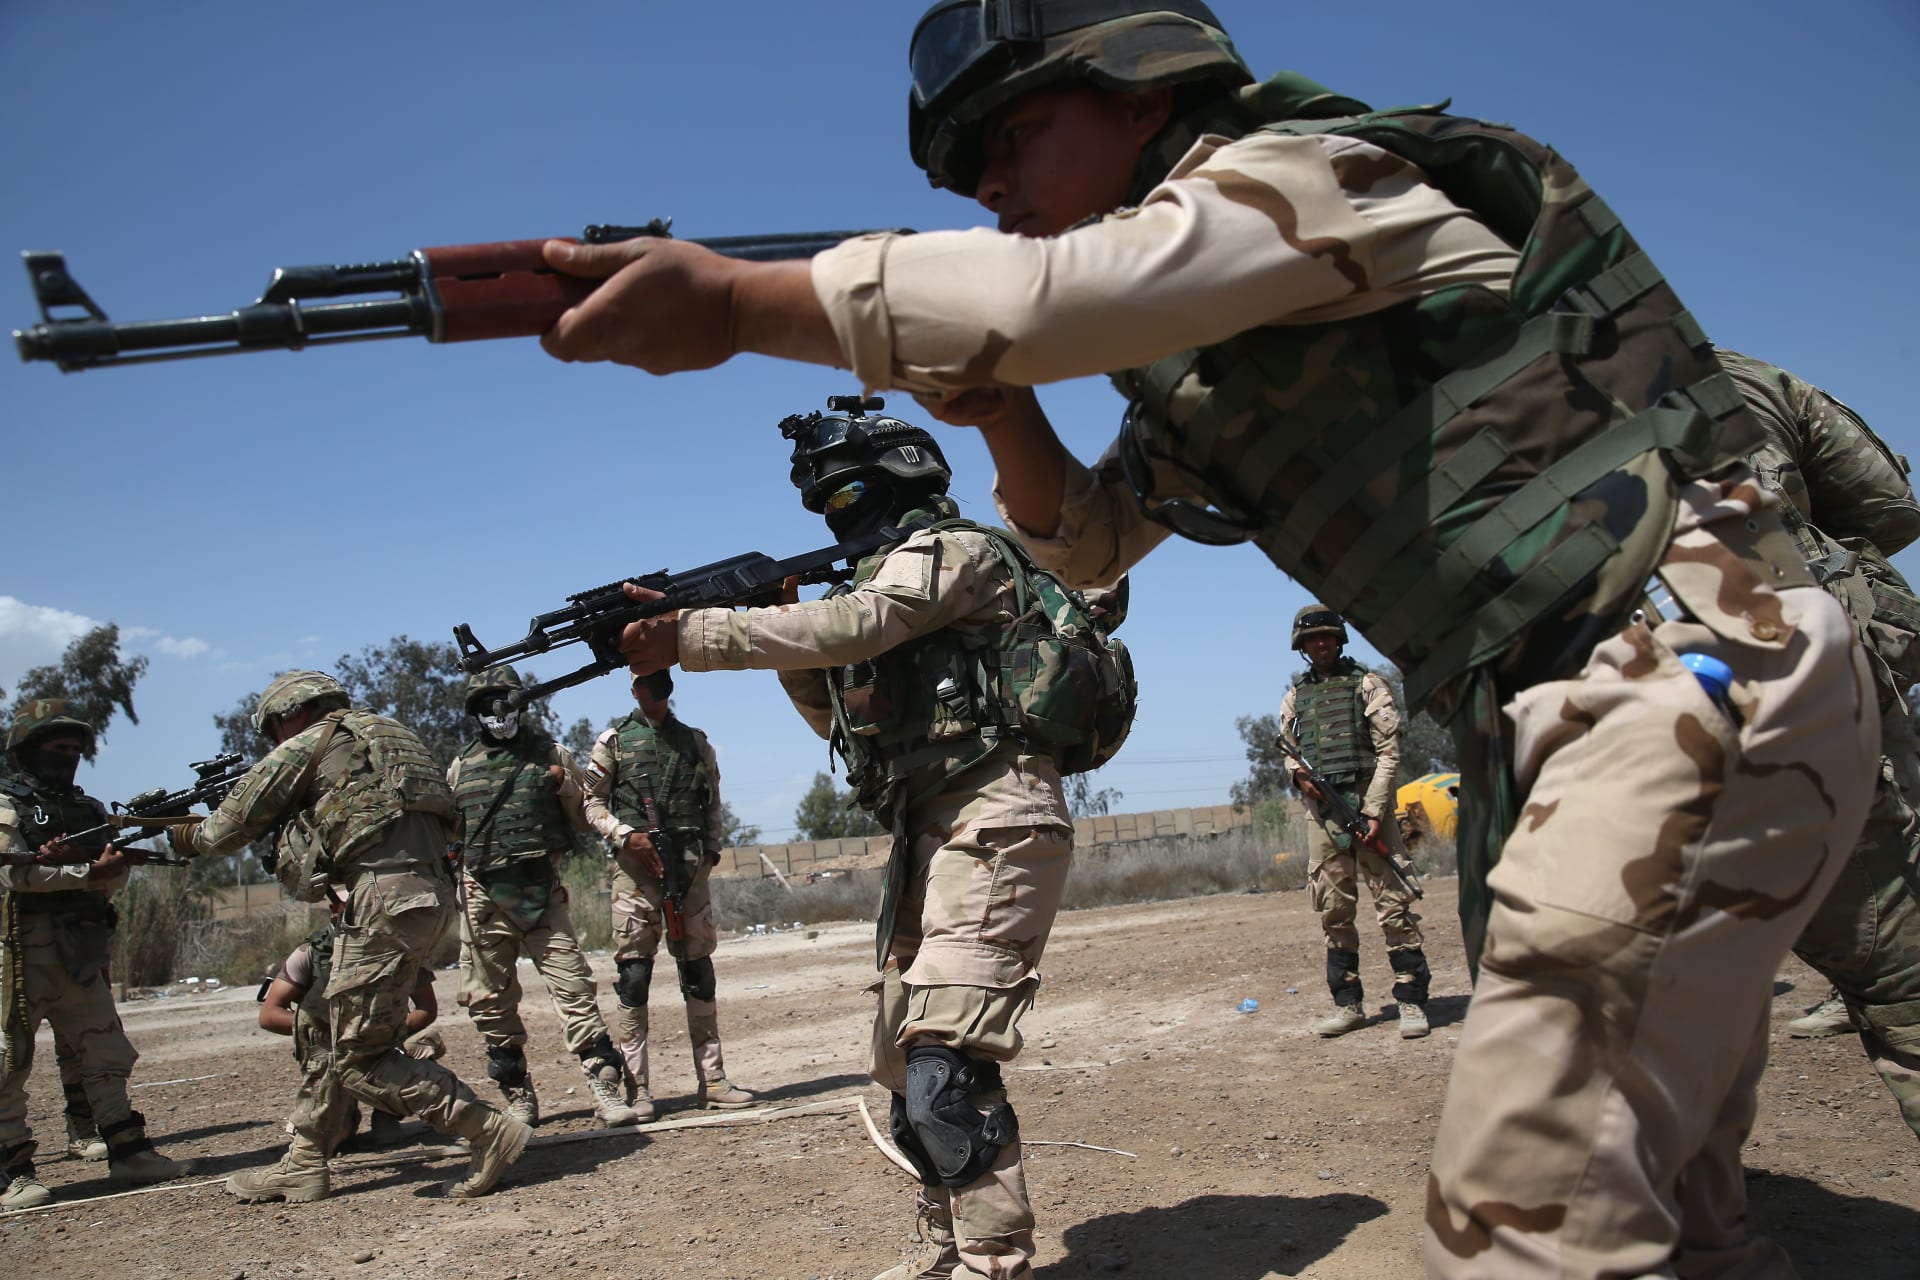 التحالف الدولي يعزي العراق إثر "خسائر مؤسفة في الأرواح بصفوف قوات الأمن" نتيجة "نيران صديقة" محتملة